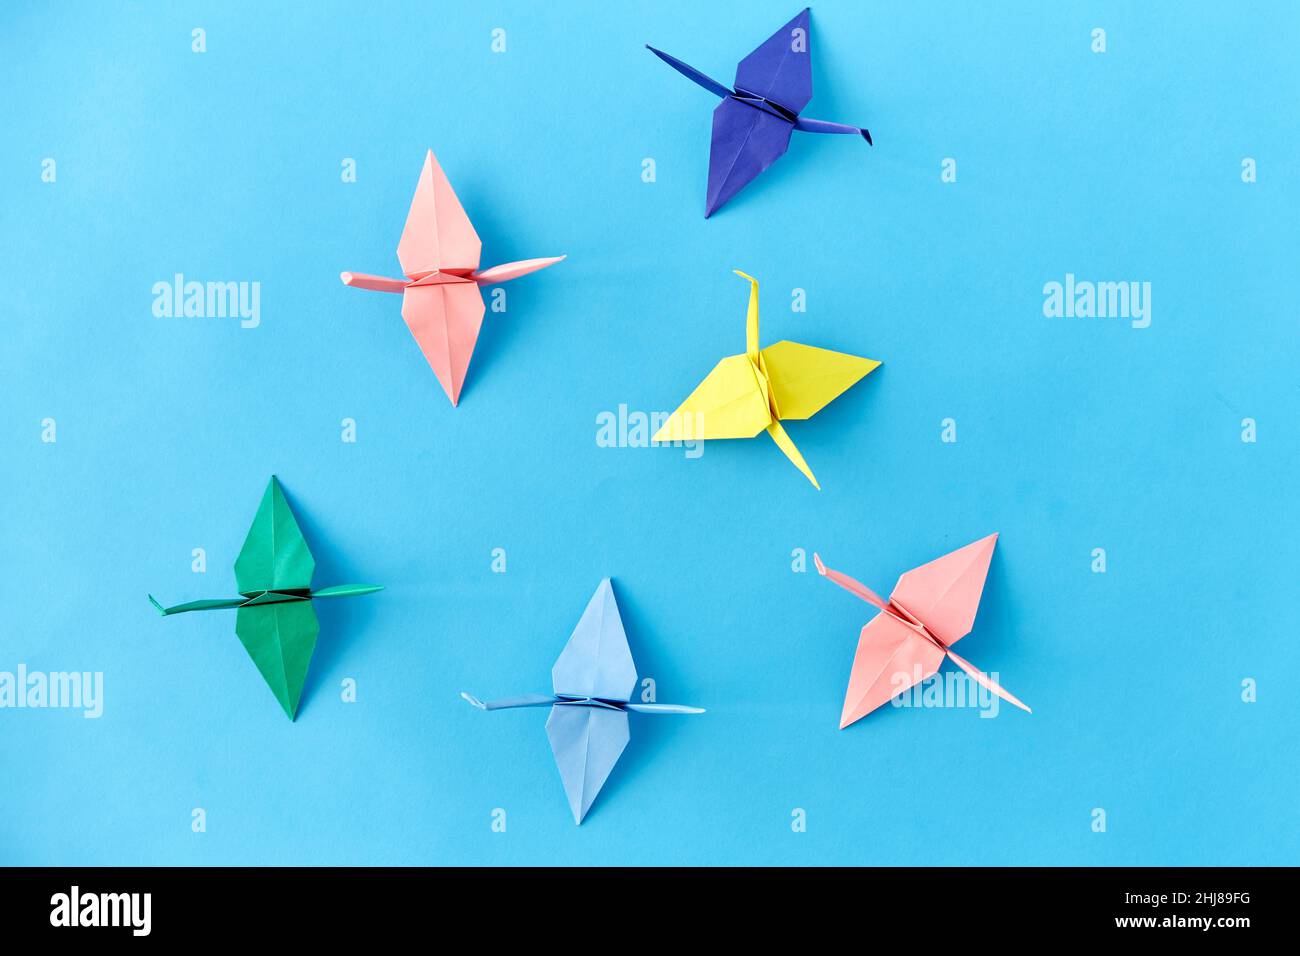 grues en papier origami sur fond bleu Banque D'Images